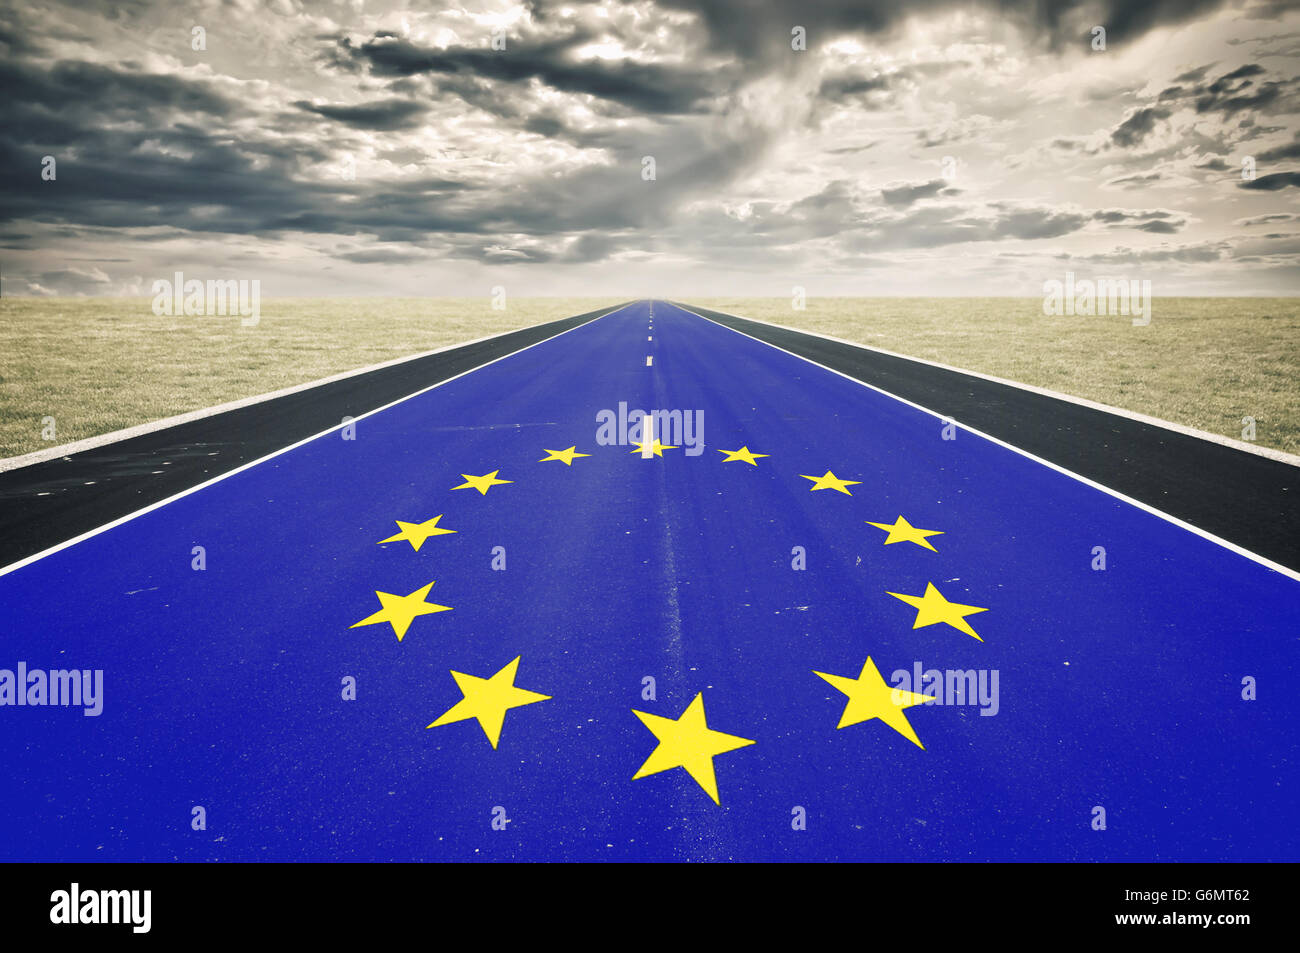 Bandera europea, perspectiva de carretera, las nubes oscuras, concepto de crisis Foto de stock